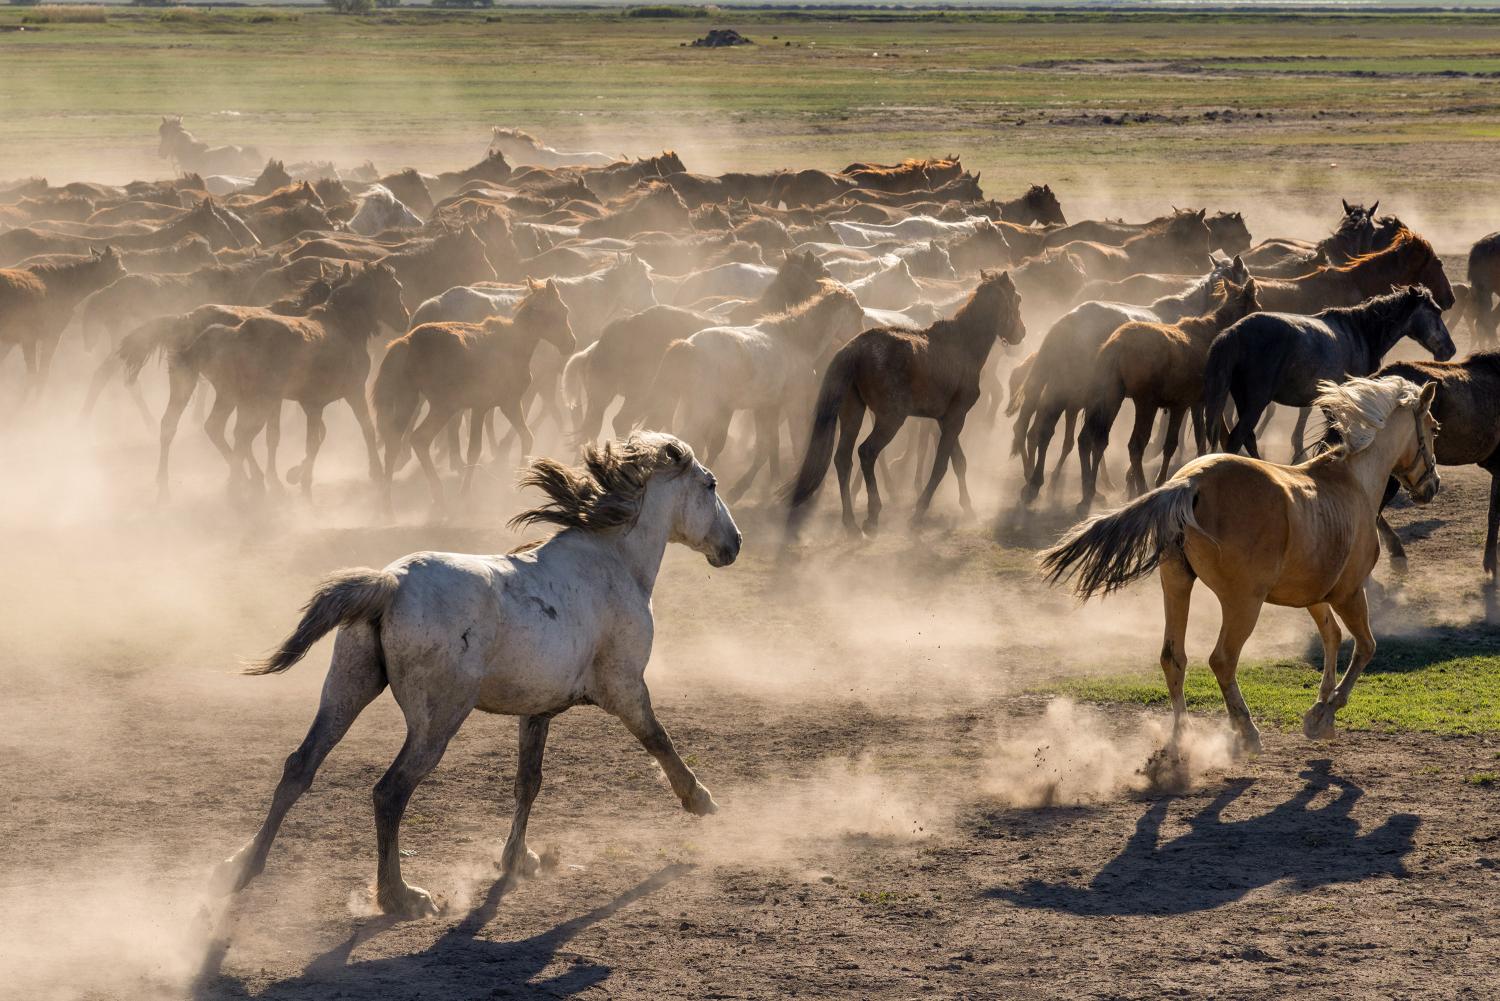 Yilki horses running through the dust